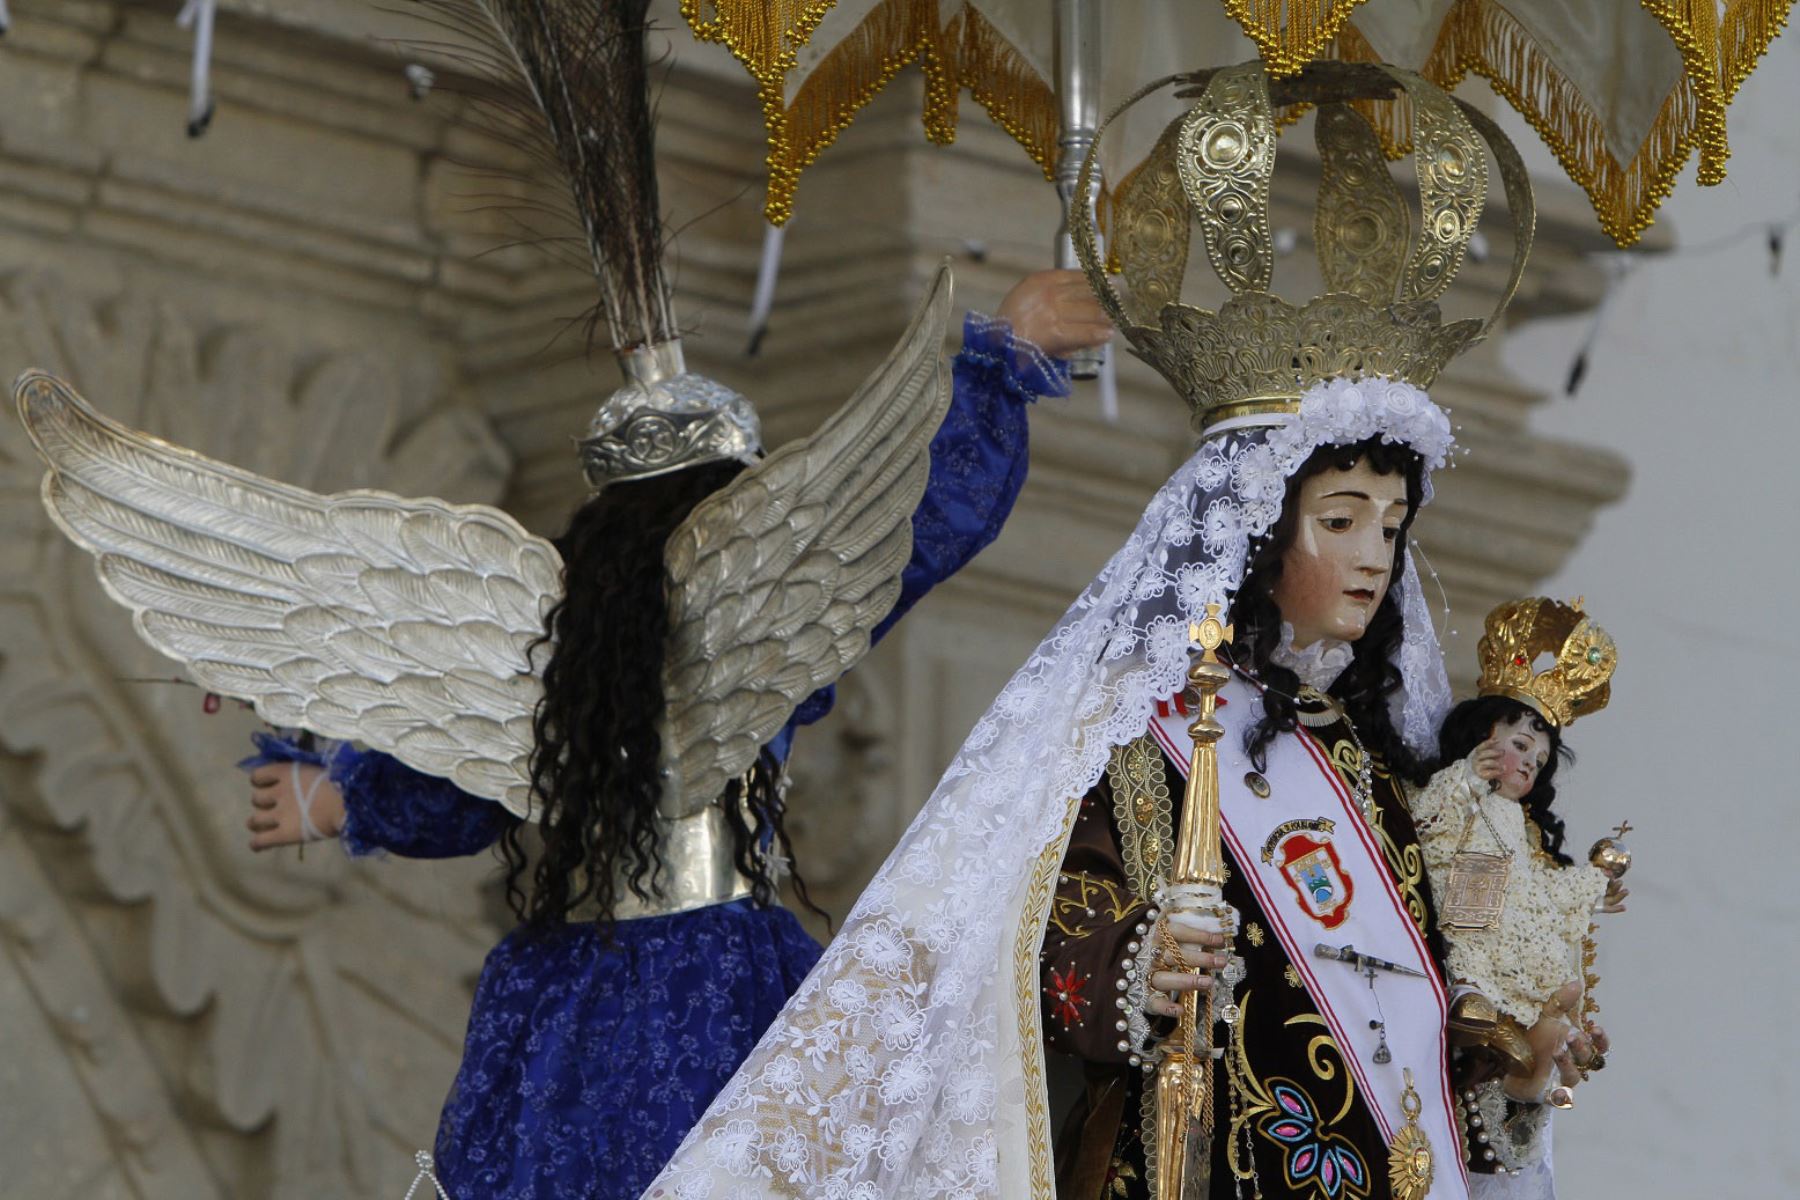 La Virgen del Carmen de Paucartambo (Cusco) fue coronada hace 36 años por san Juan Pablo II. Foto: ANDINA/Percy Hurtado.